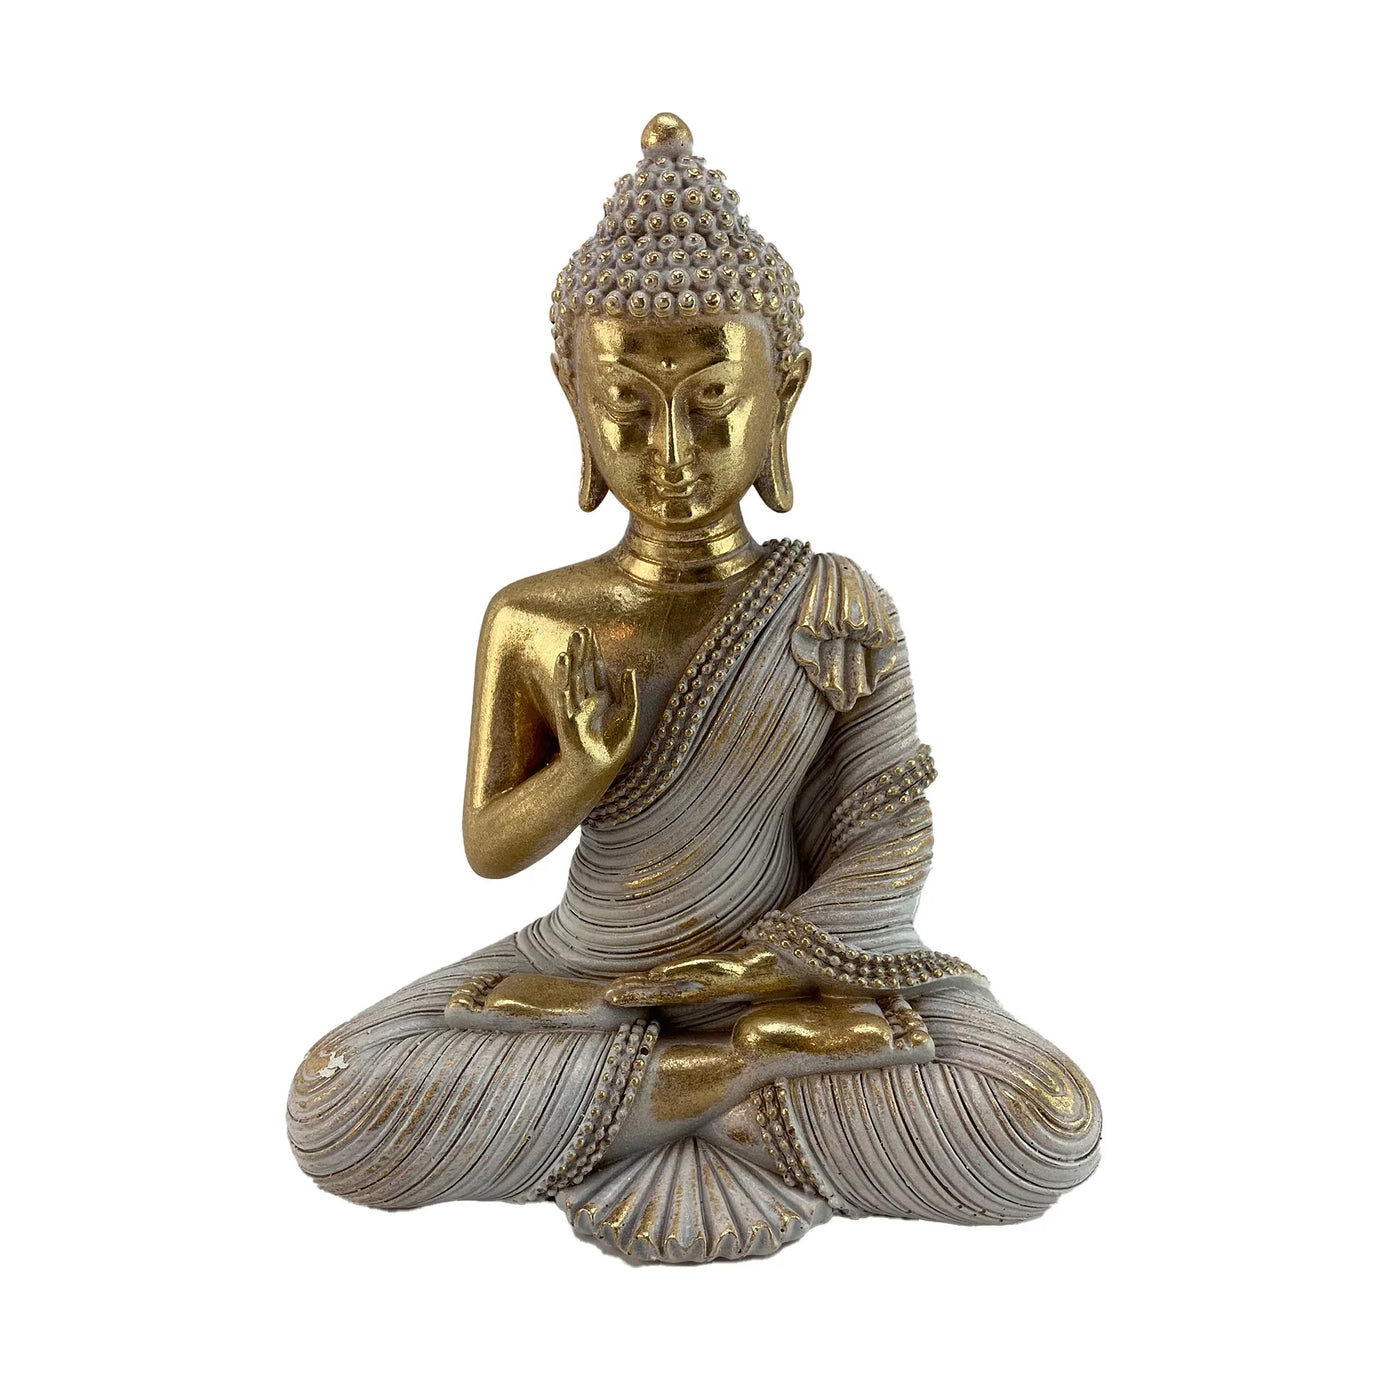 Buddha Meditation Statue 6"x4"x8"